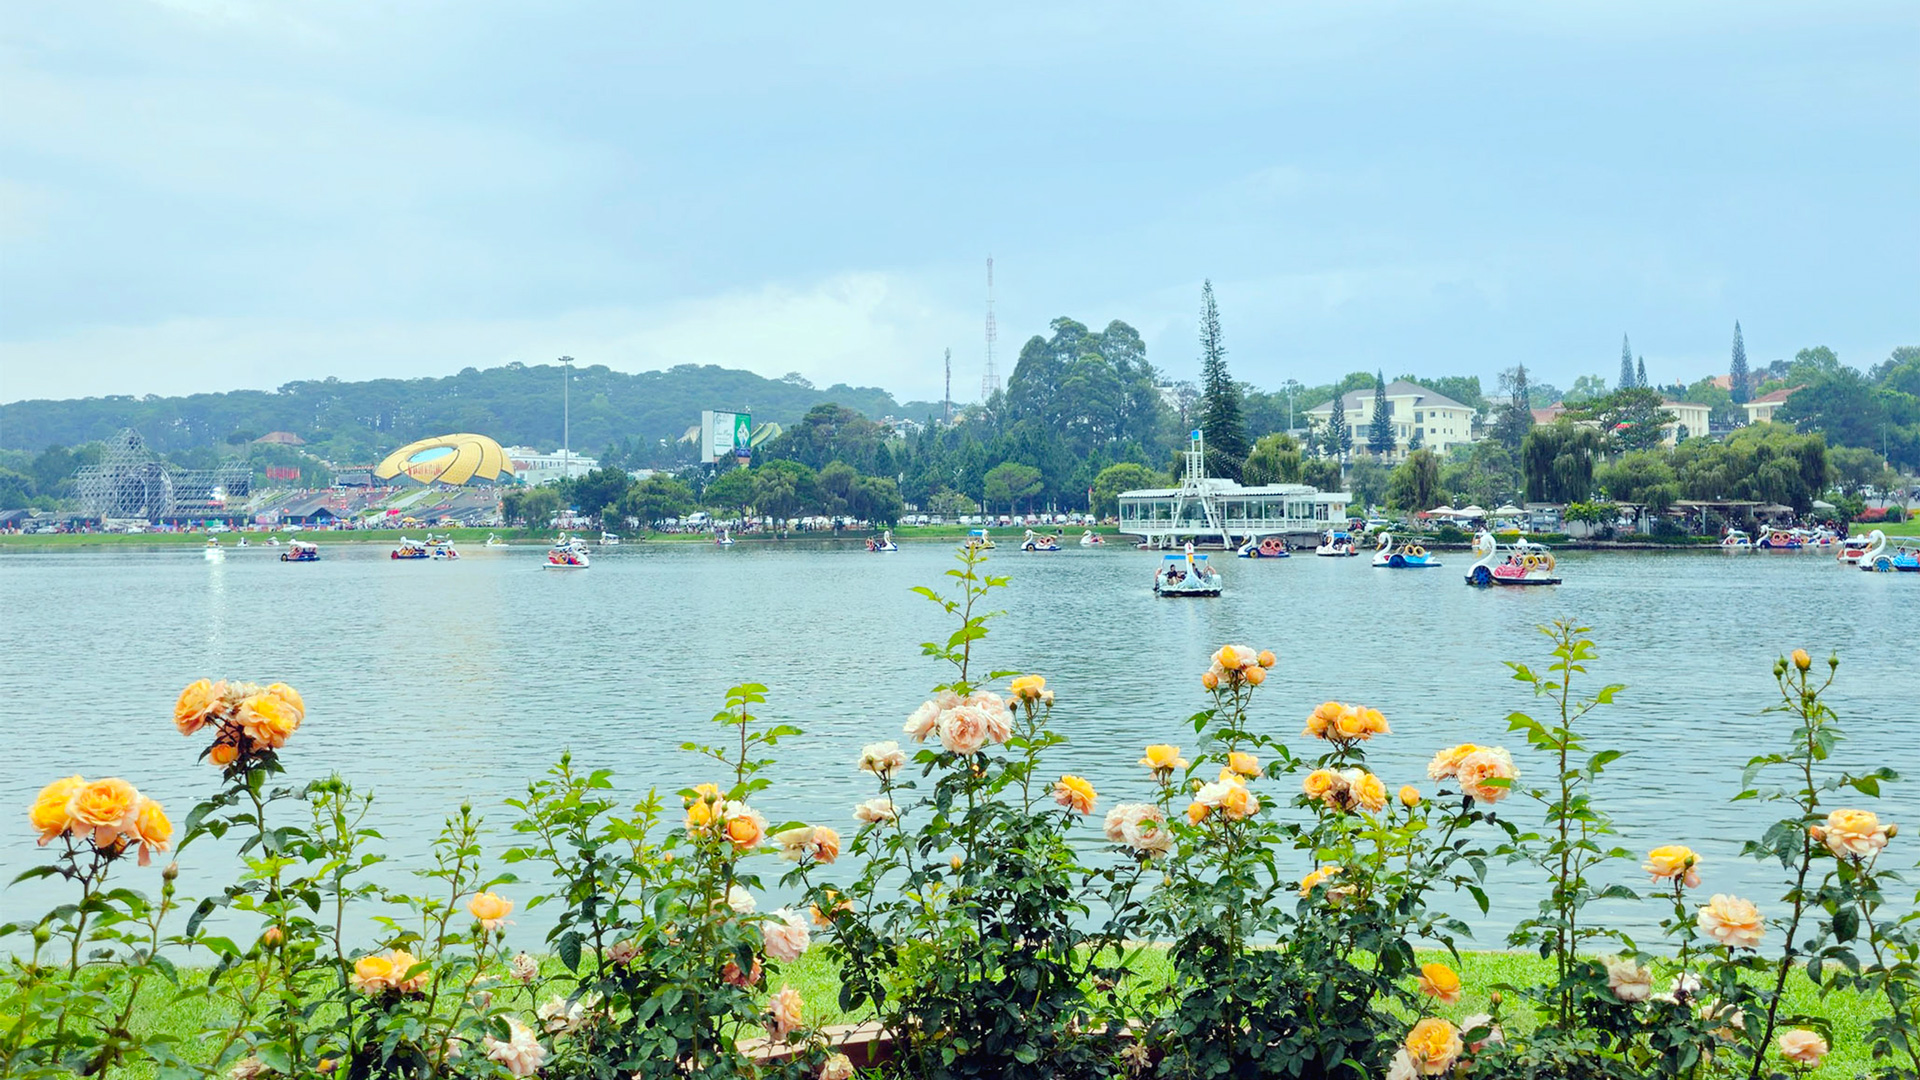 Hồ Xuân Hương sẽ bình yên và lãng mạn hơn khi chấm dứt tình trạng 
khai thác thủy sản trái phép